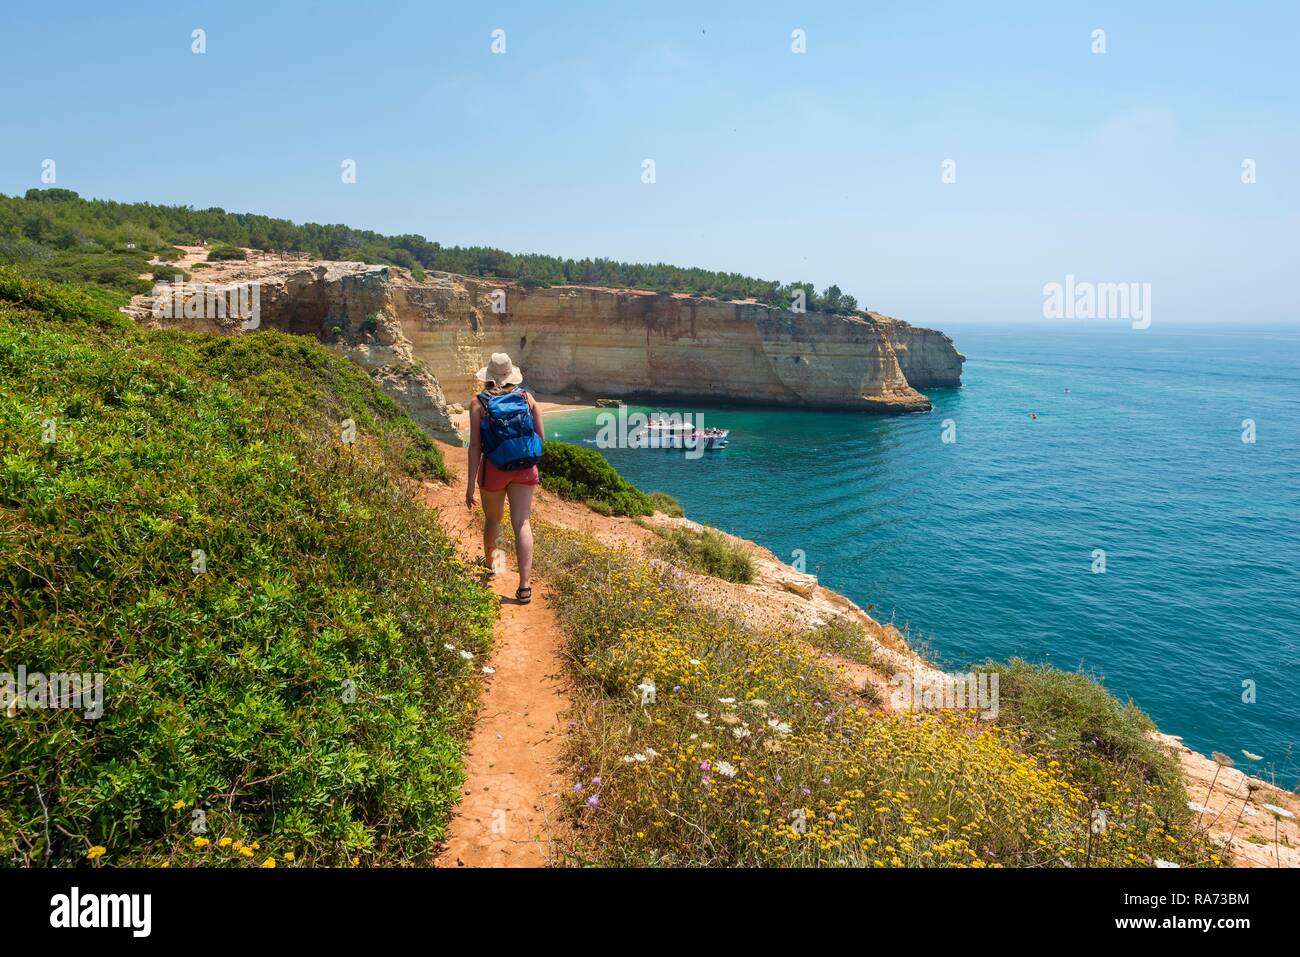 Giovane donna su un sentiero escursionistico, vista sul mare turchese, spiaggia Praia da Marinha, robusto costa rocciosa di arenaria Foto Stock